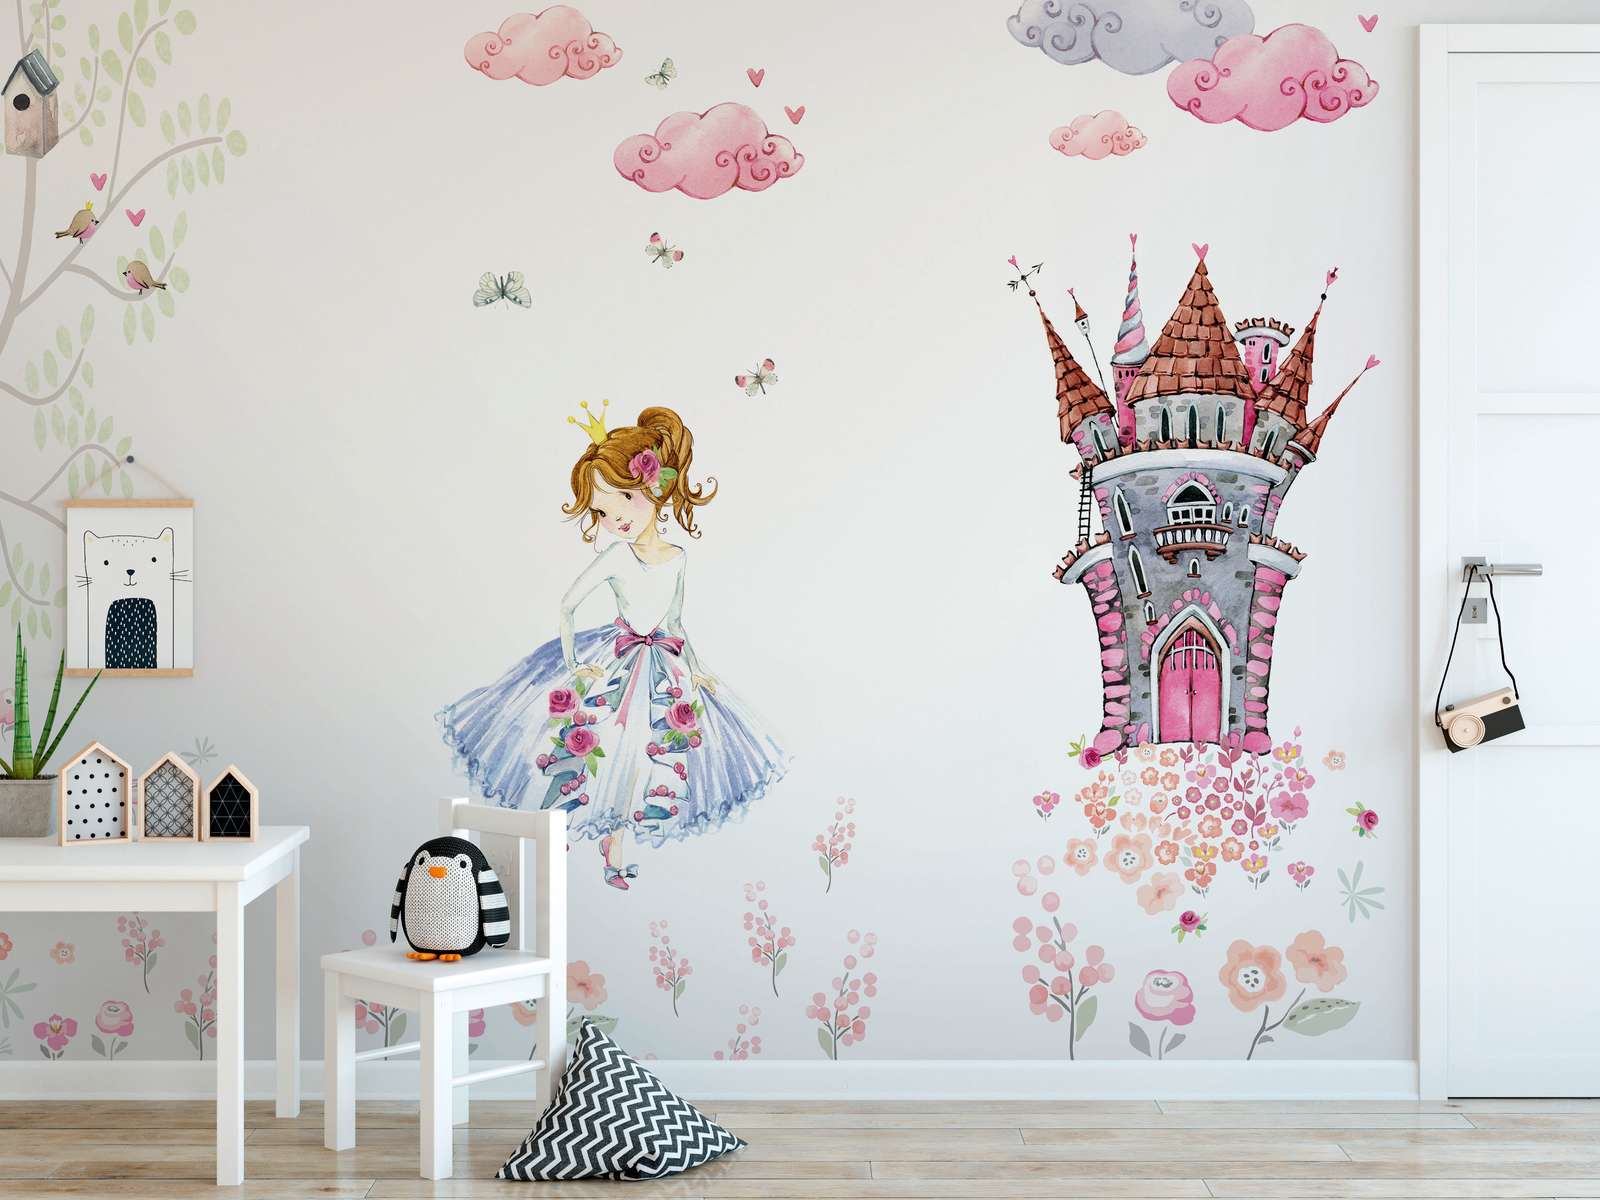             Papier peint panoramique avec princesse dans le jardin du château chambre d'enfant - rose, blanc, vert
        